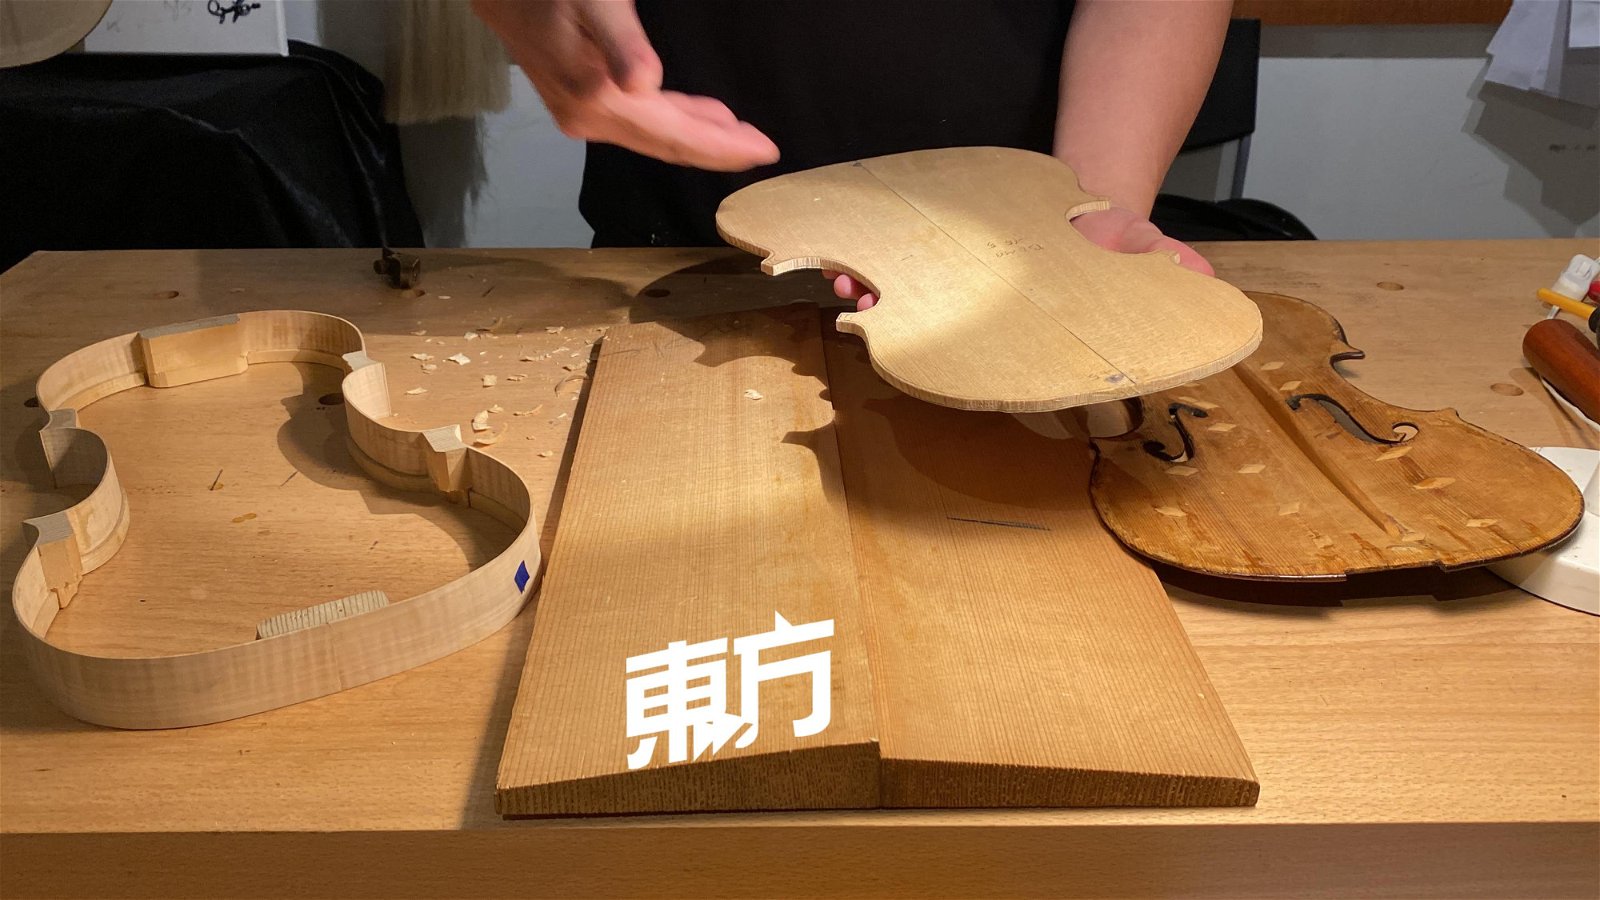 王祺伟自称自己就像是木匠人，每天都在削木，所以对他而言，他是非常赞成把“削木”这件事交给机器代劳，而他并不认为这会影响到小提琴的素质。